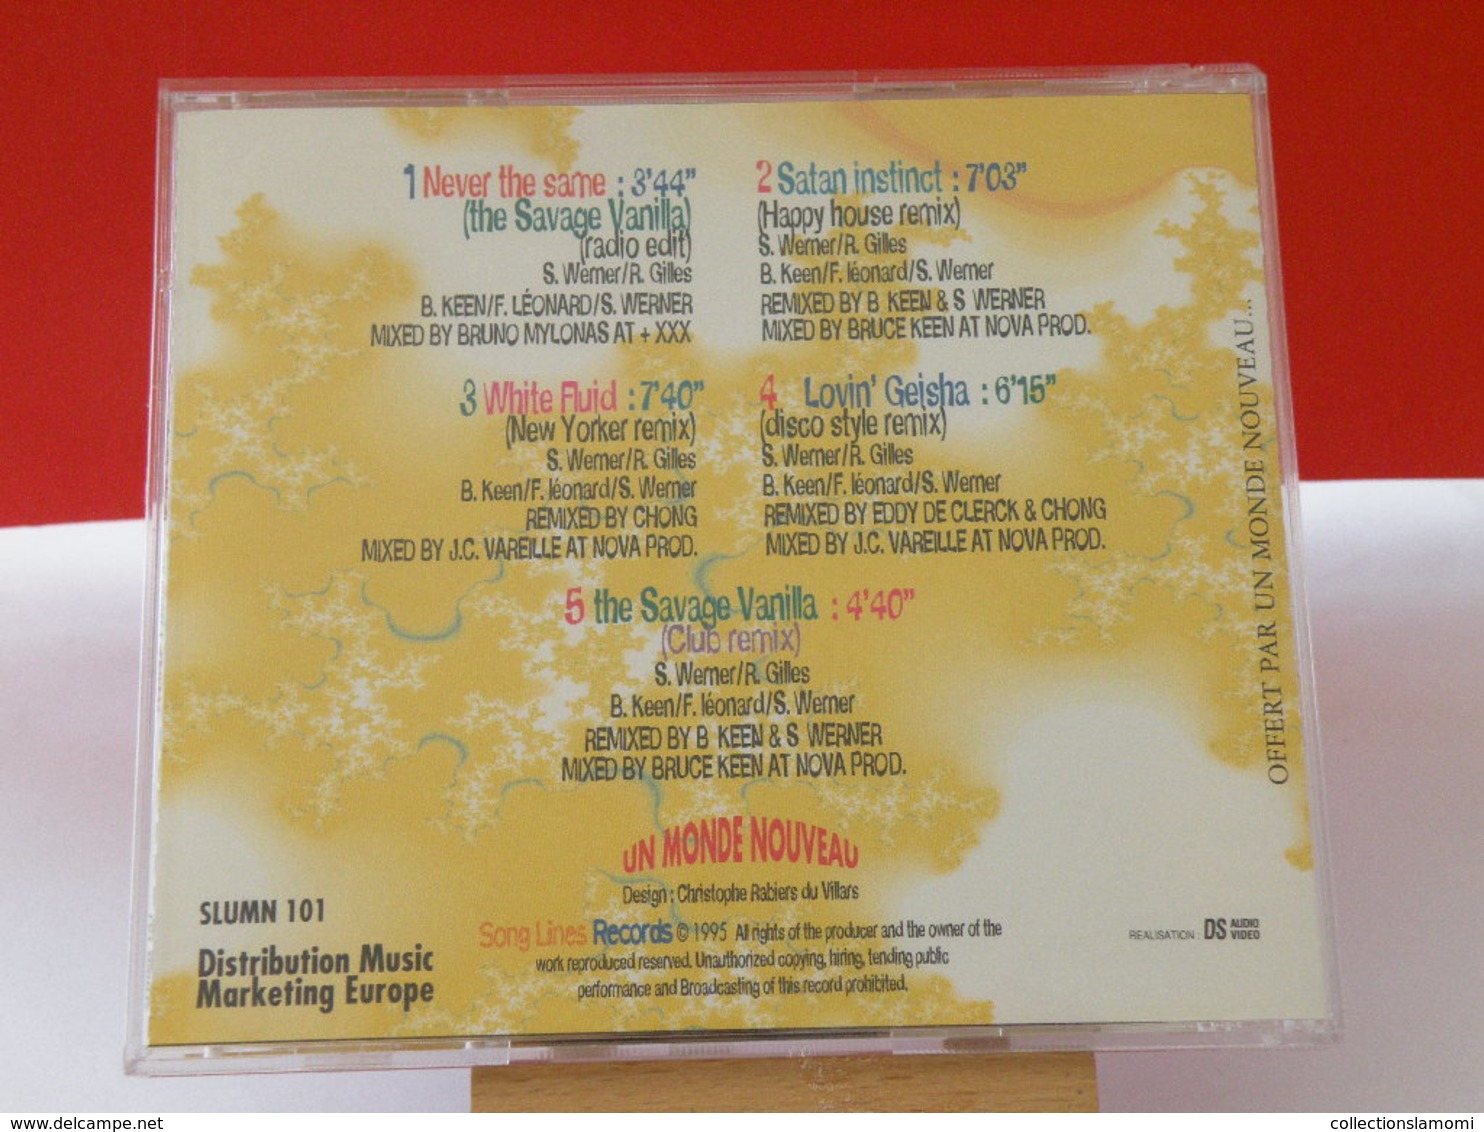 U.M.N. - (Titres Sur Photos) - CD 1995 - Musiche Del Mondo